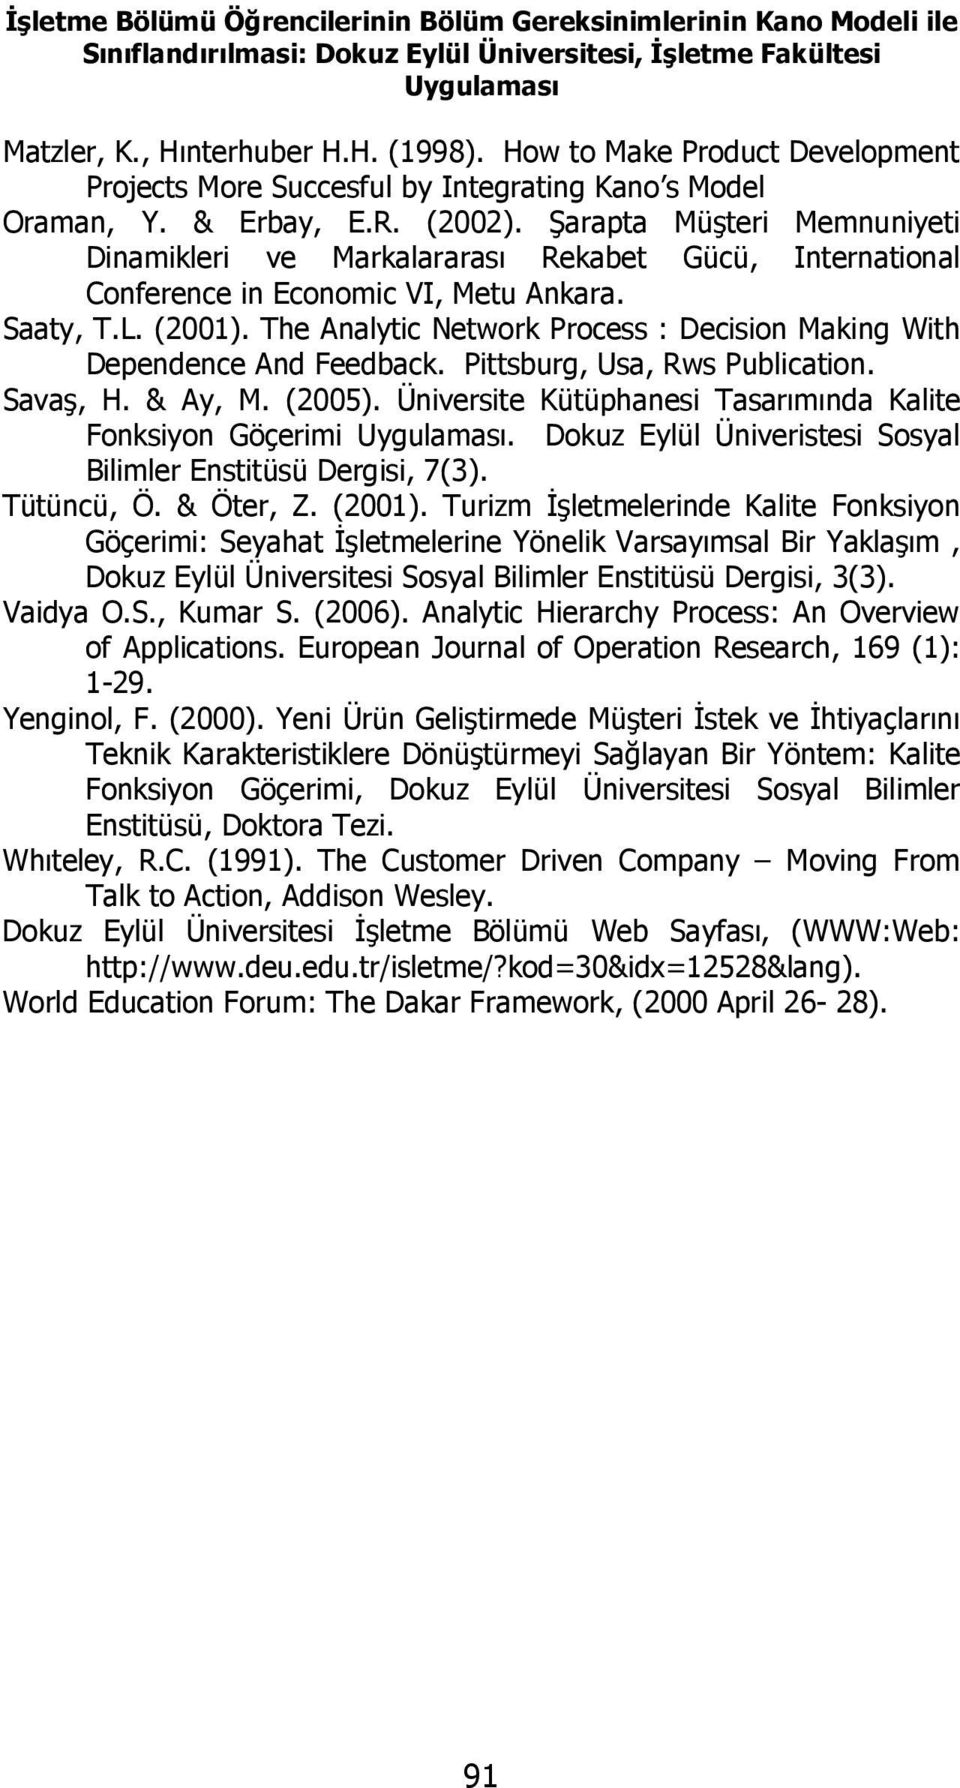 Şarapta Müşteri Memnuniyeti Dinamikleri ve Markalararası Rekabet Gücü, International Conference in Economic VI, Metu Ankara. Saaty, T.L. (2001).